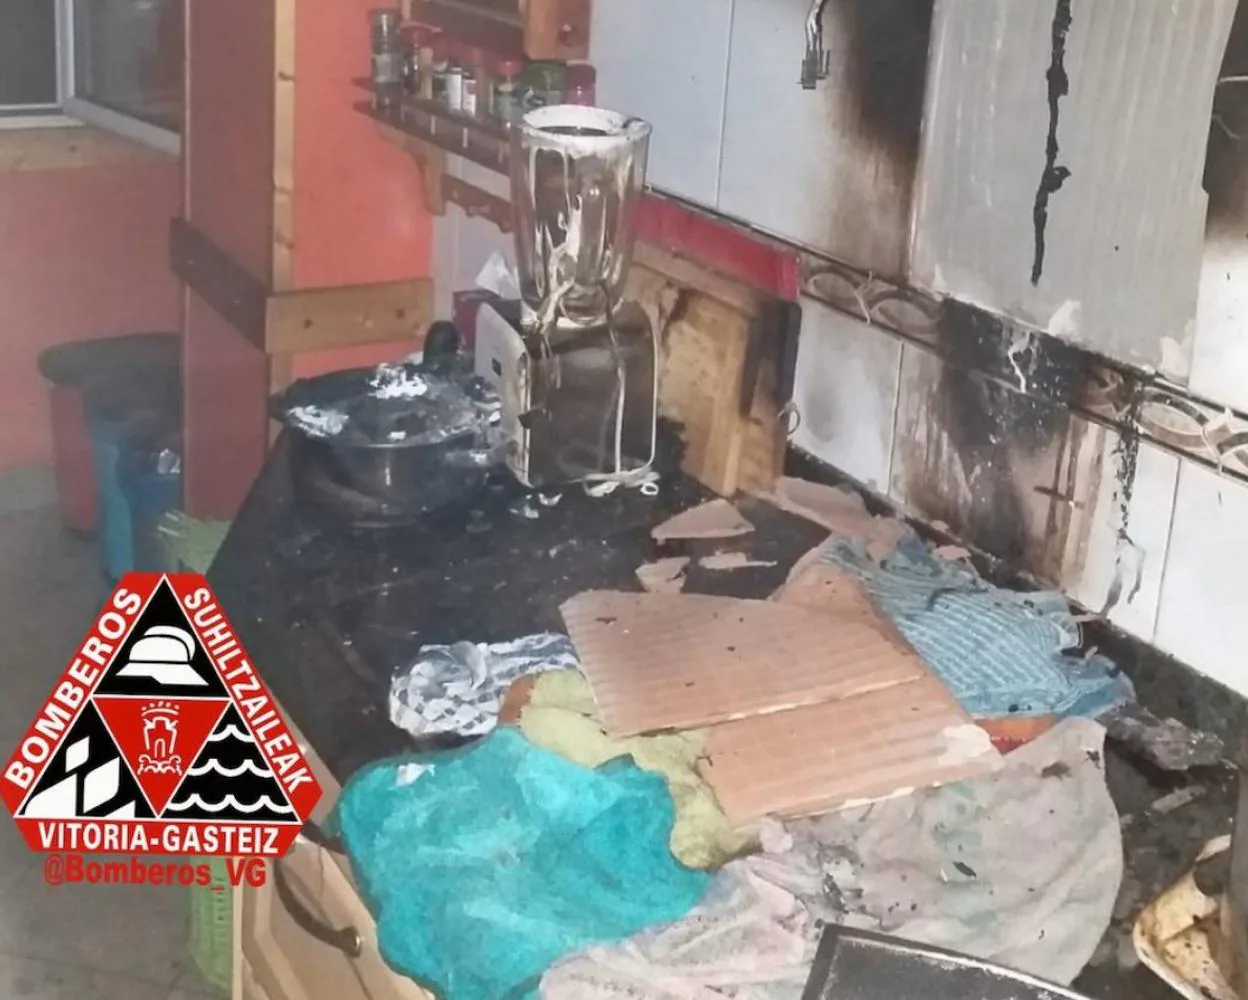 El incendio se ha declarado en la cocina de un piso de la calle Beato Tomás de Zumárraga.